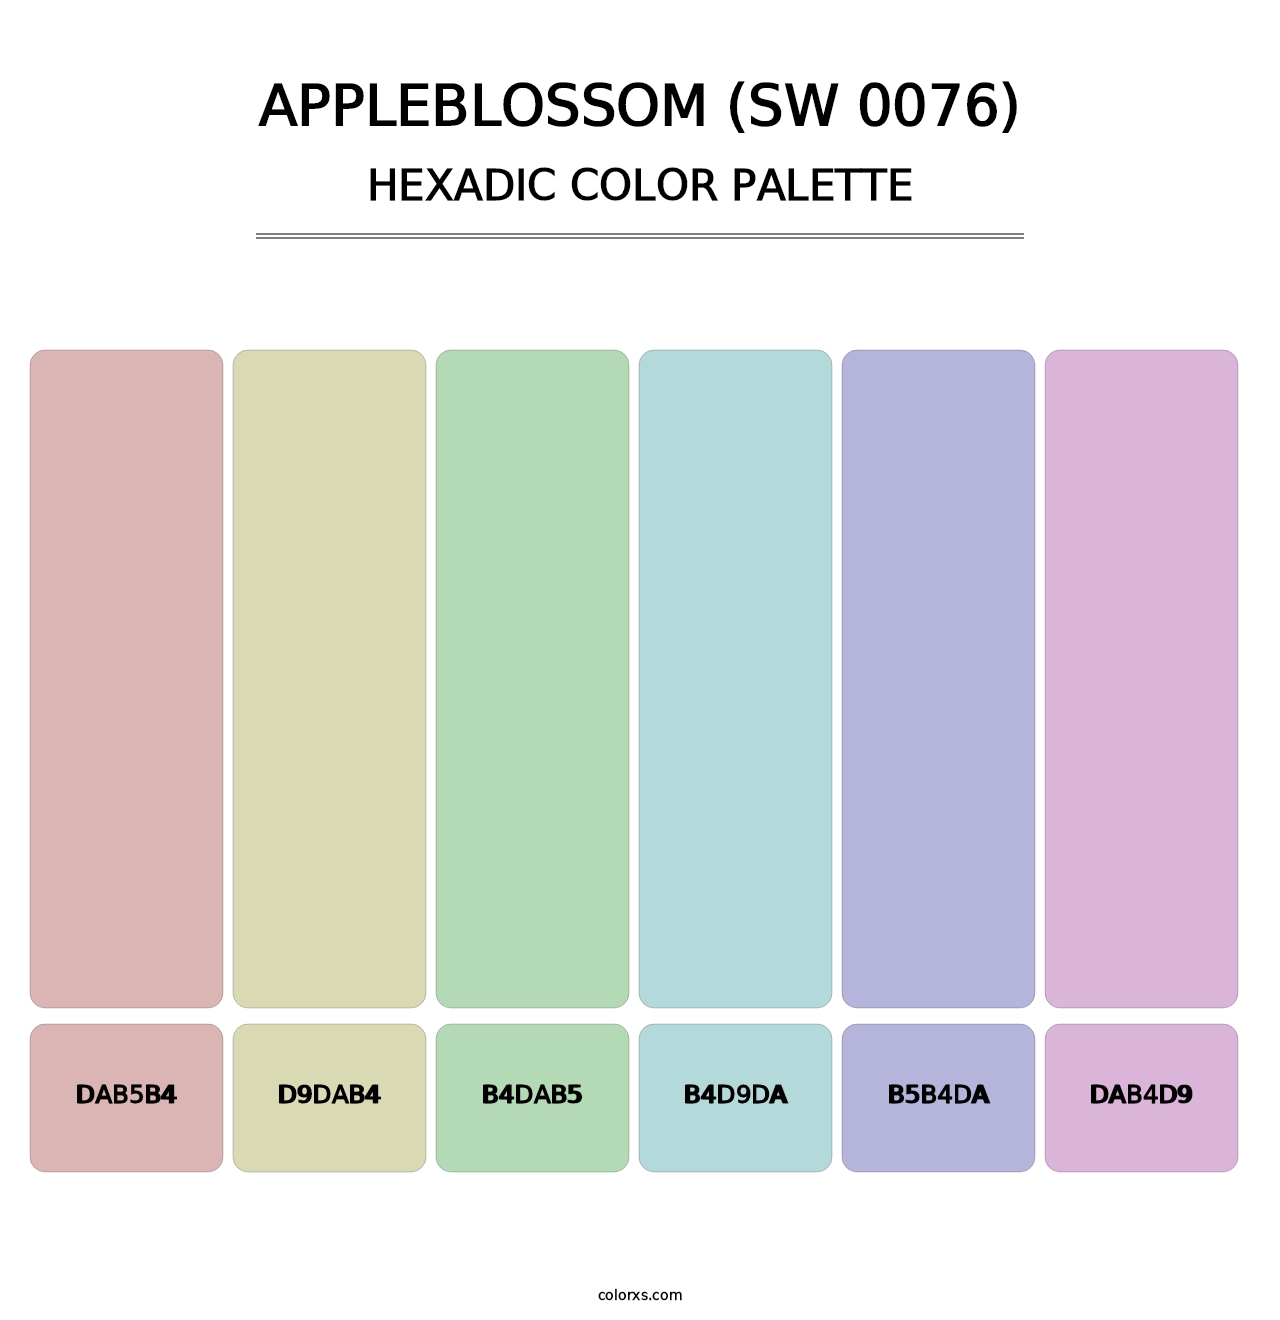 Appleblossom (SW 0076) - Hexadic Color Palette